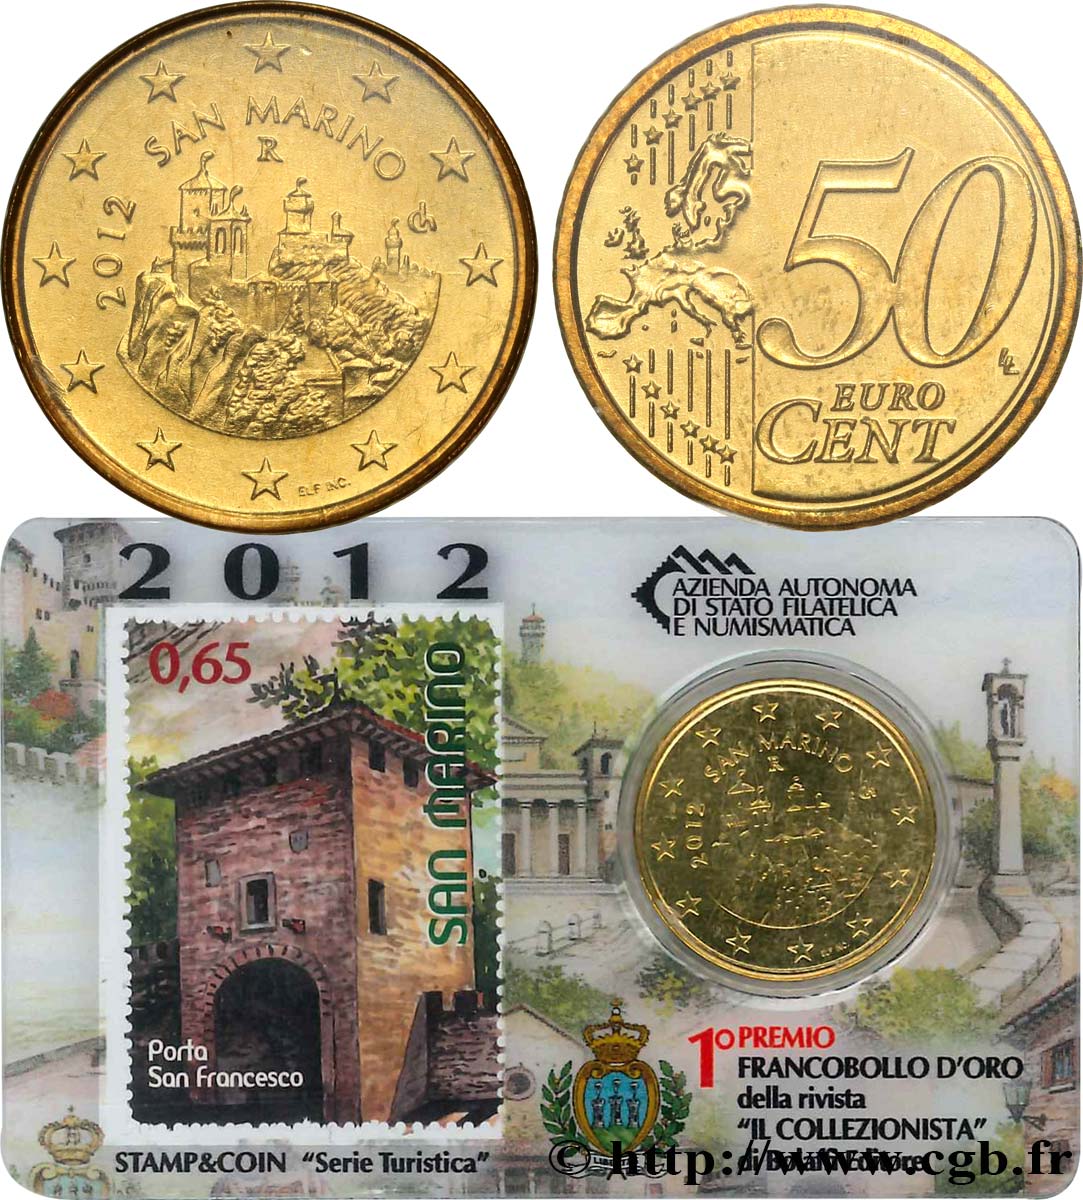 RÉPUBLIQUE DE SAINT- MARIN Coin-Card / Timbre 50 Cent - PORTE DE SAINT-FRANÇOIS 2012 FDC